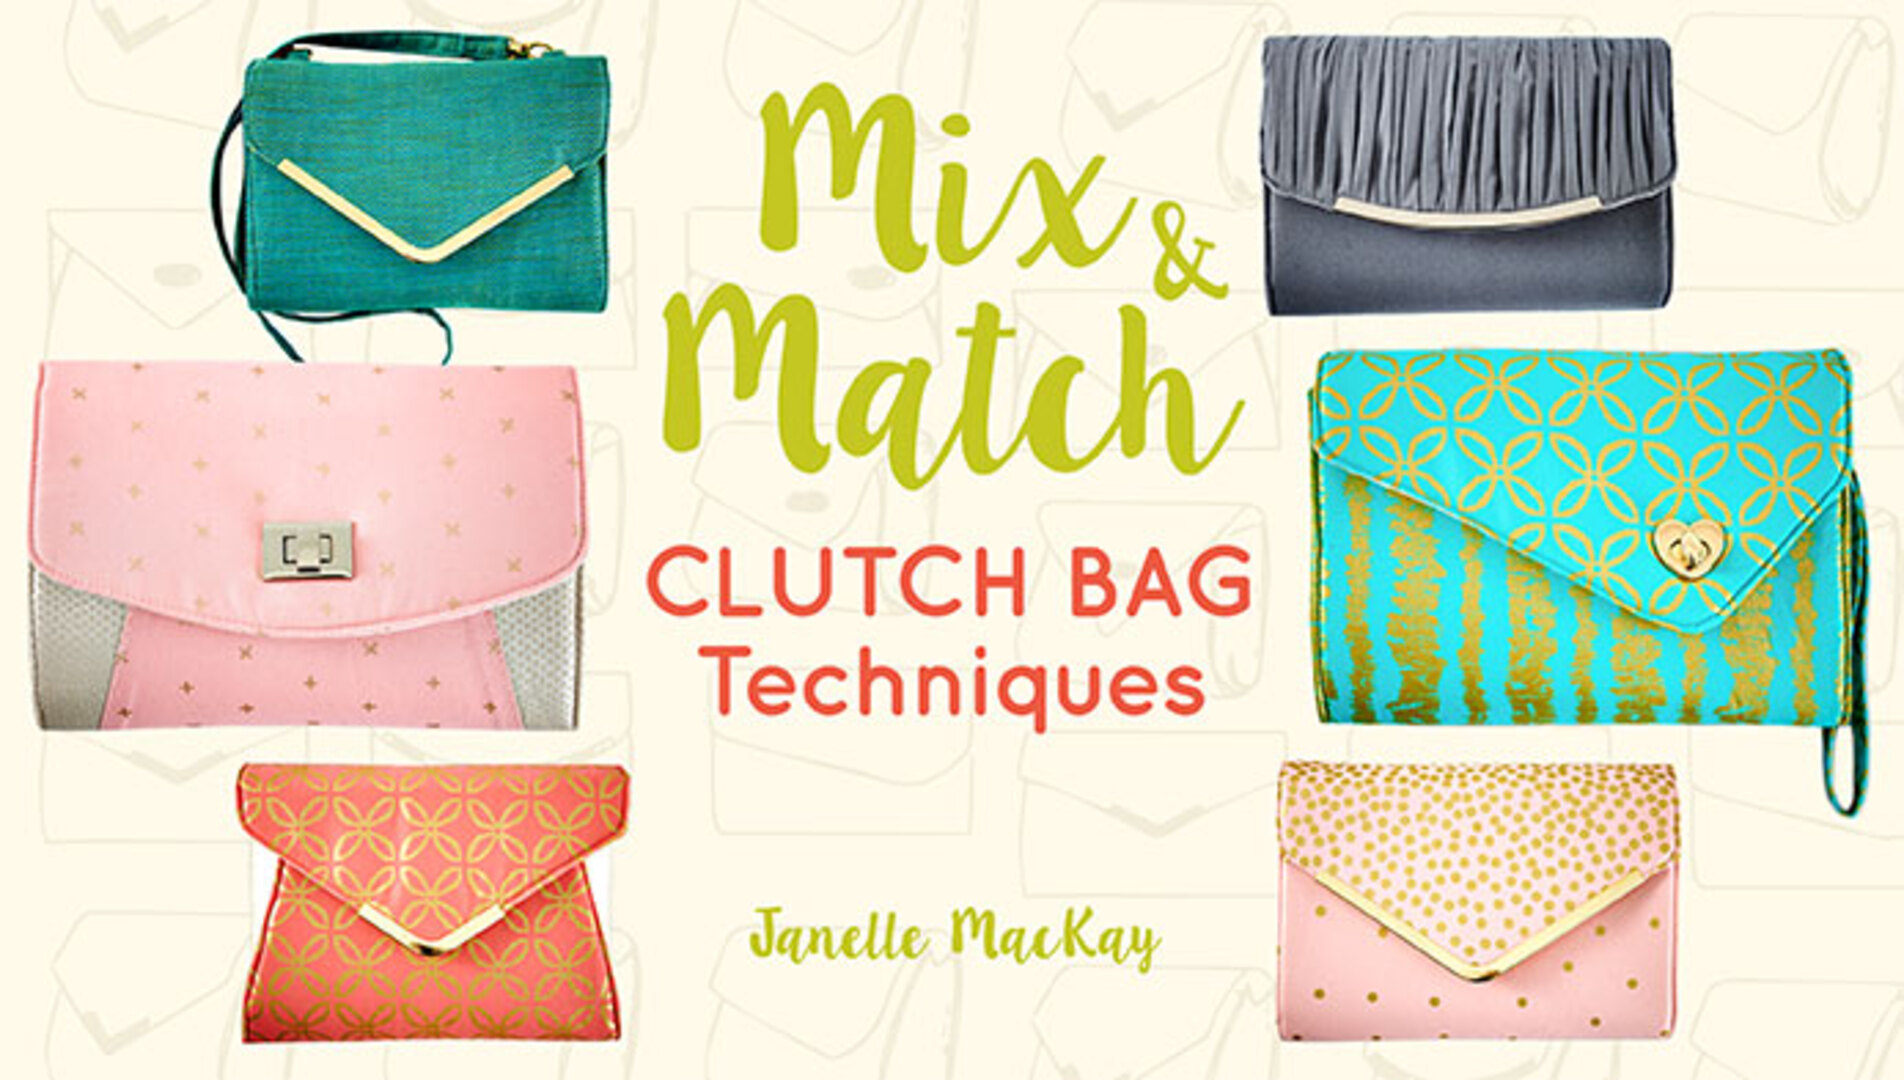 Mix & Match Clutch Bag Techniques